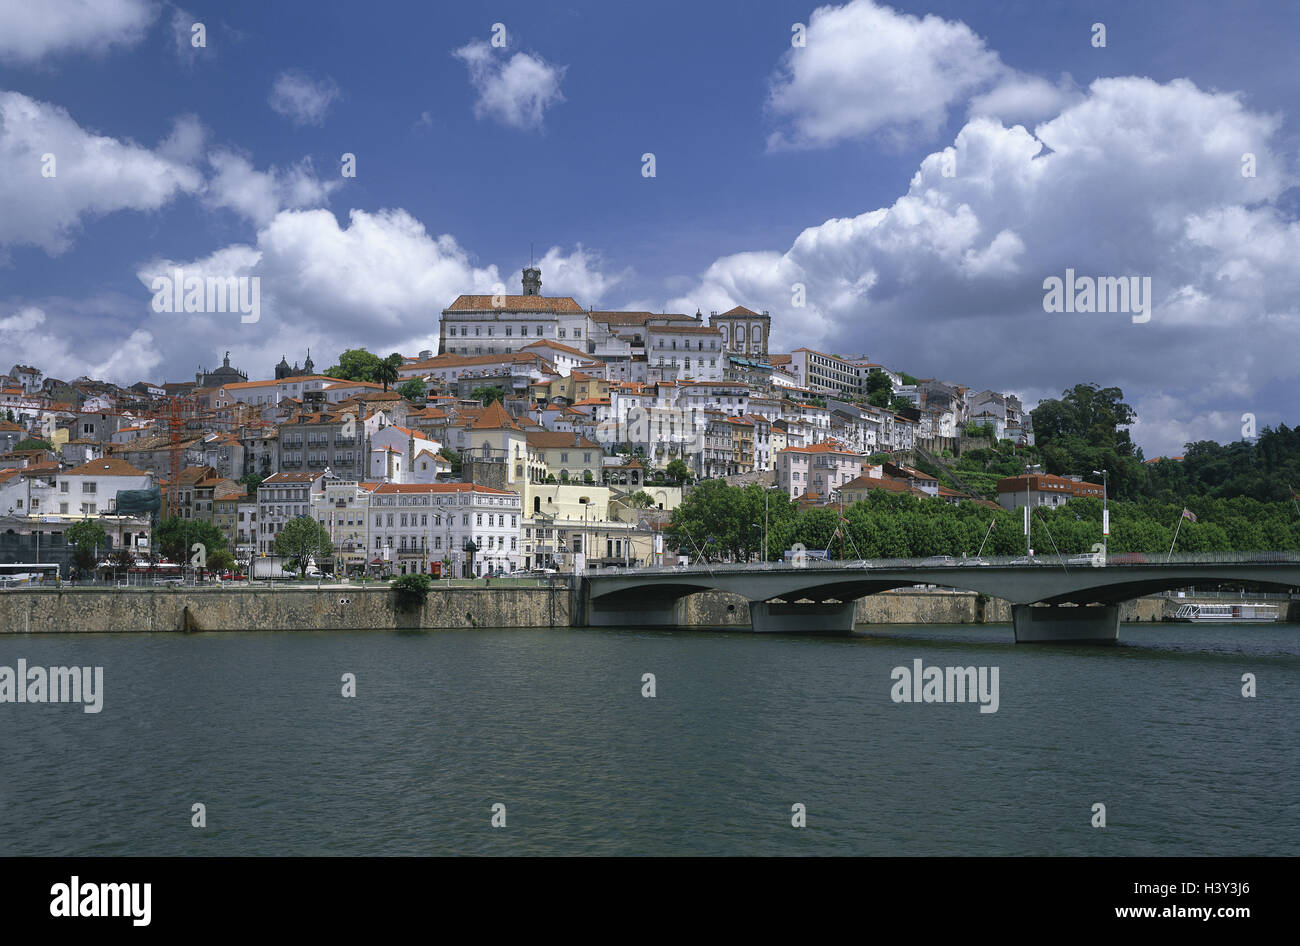 Portugal, Provinz Beira Litoral, Coimbra, Blick auf die Stadt, Rio lunar Ego, Brücke Stadt, Universitätsstadt, Häuser, Universität, Fluss, Stockfoto